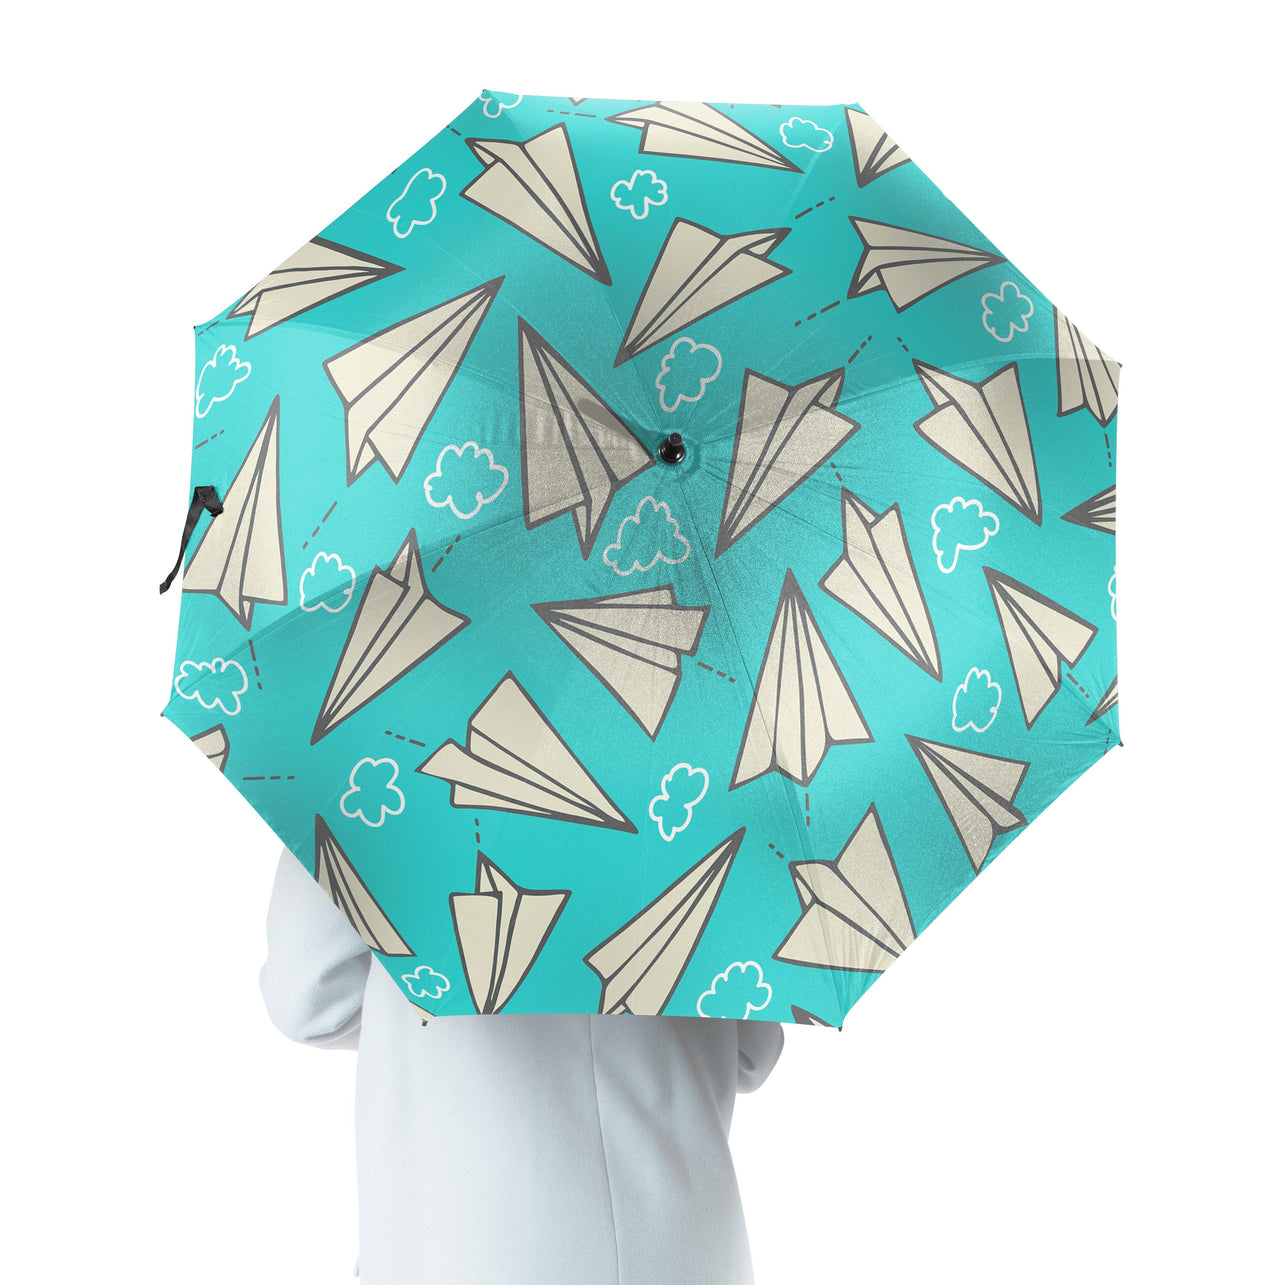 Super Cool Paper Airplanes Designed Umbrella